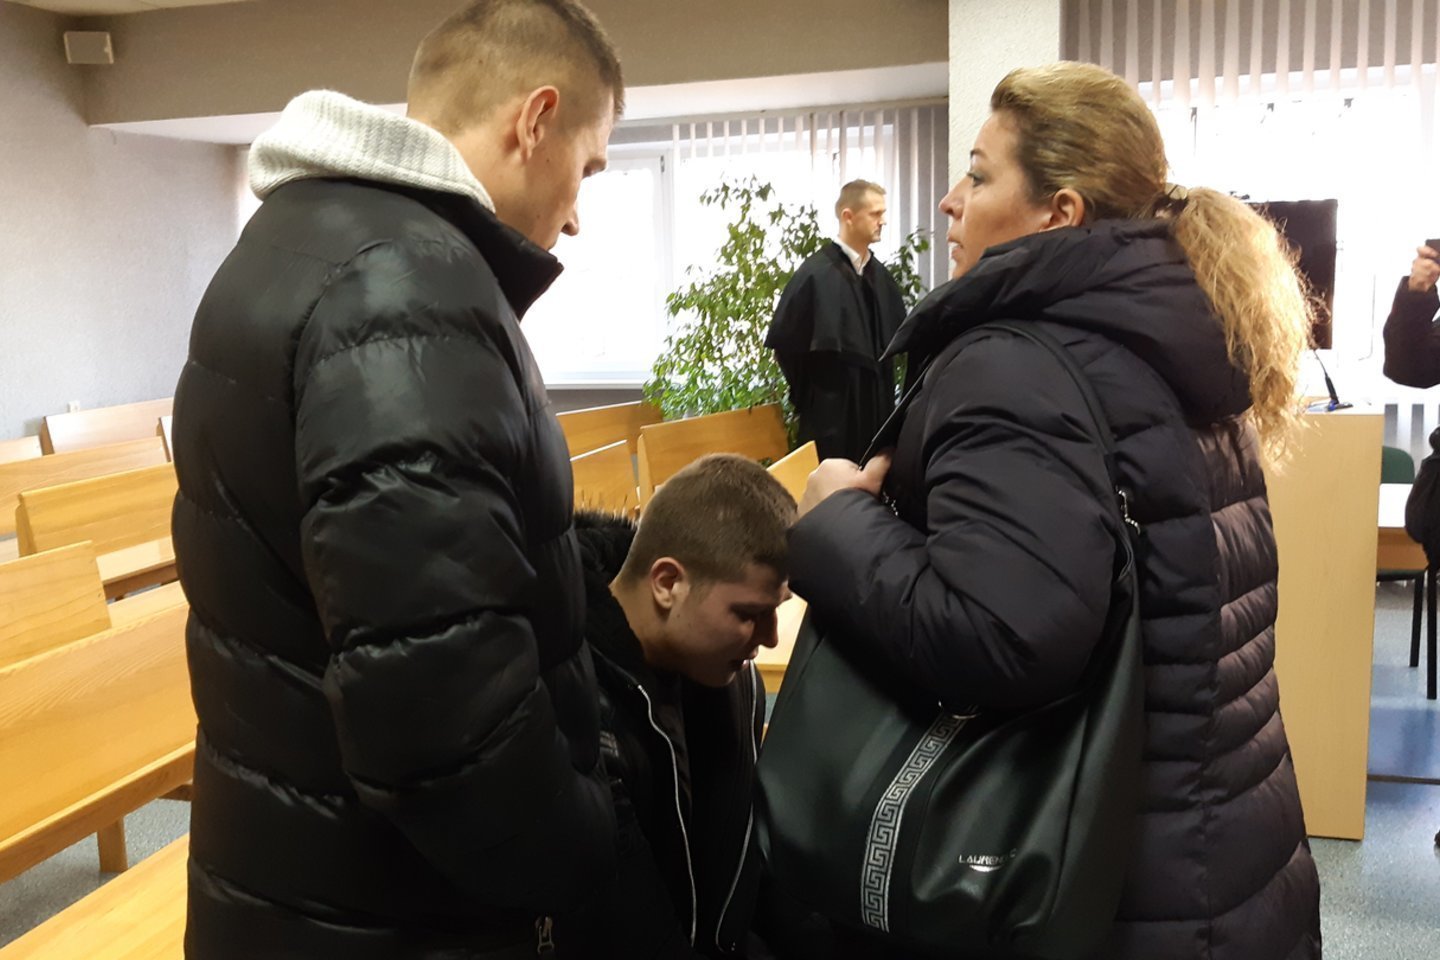  Teismų sprendimai palikti laisvėje paauglę išprievartavusį jurbarkietį M.Icikevičių sukrėtė auką ir jos artimuosius. <br> A.Pilaitienės nuotr.